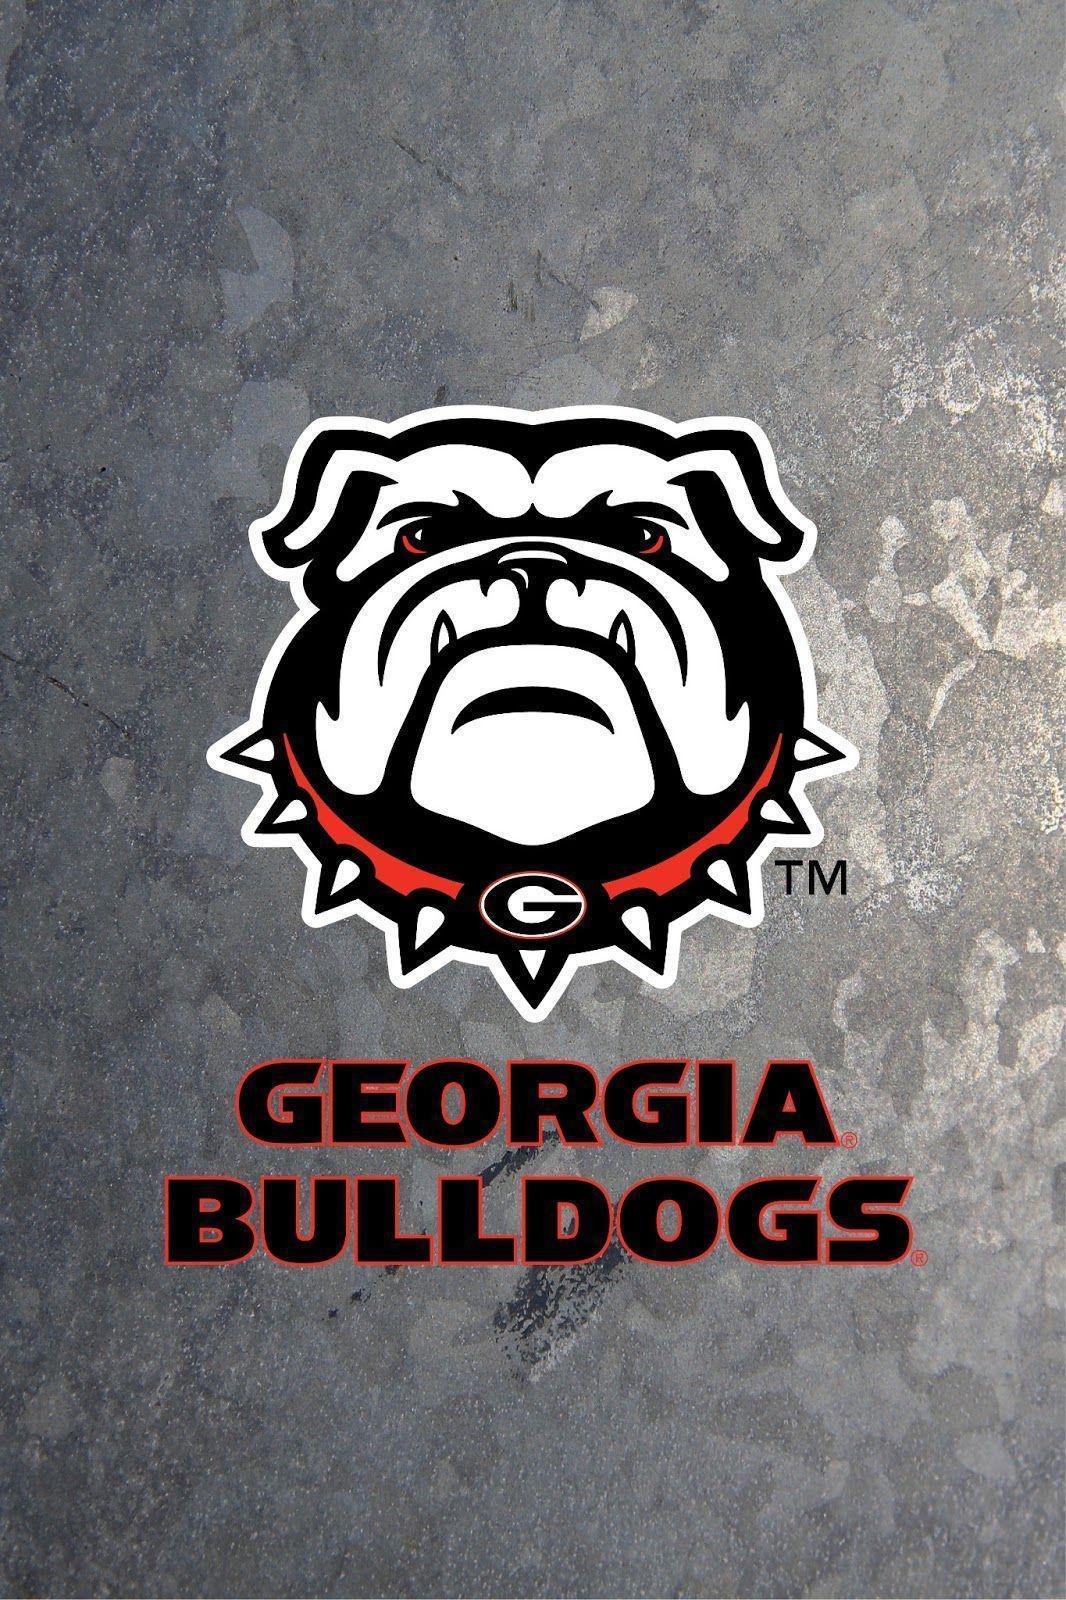 Georgia Bulldogs Wallpapers - Wallpaper Cave